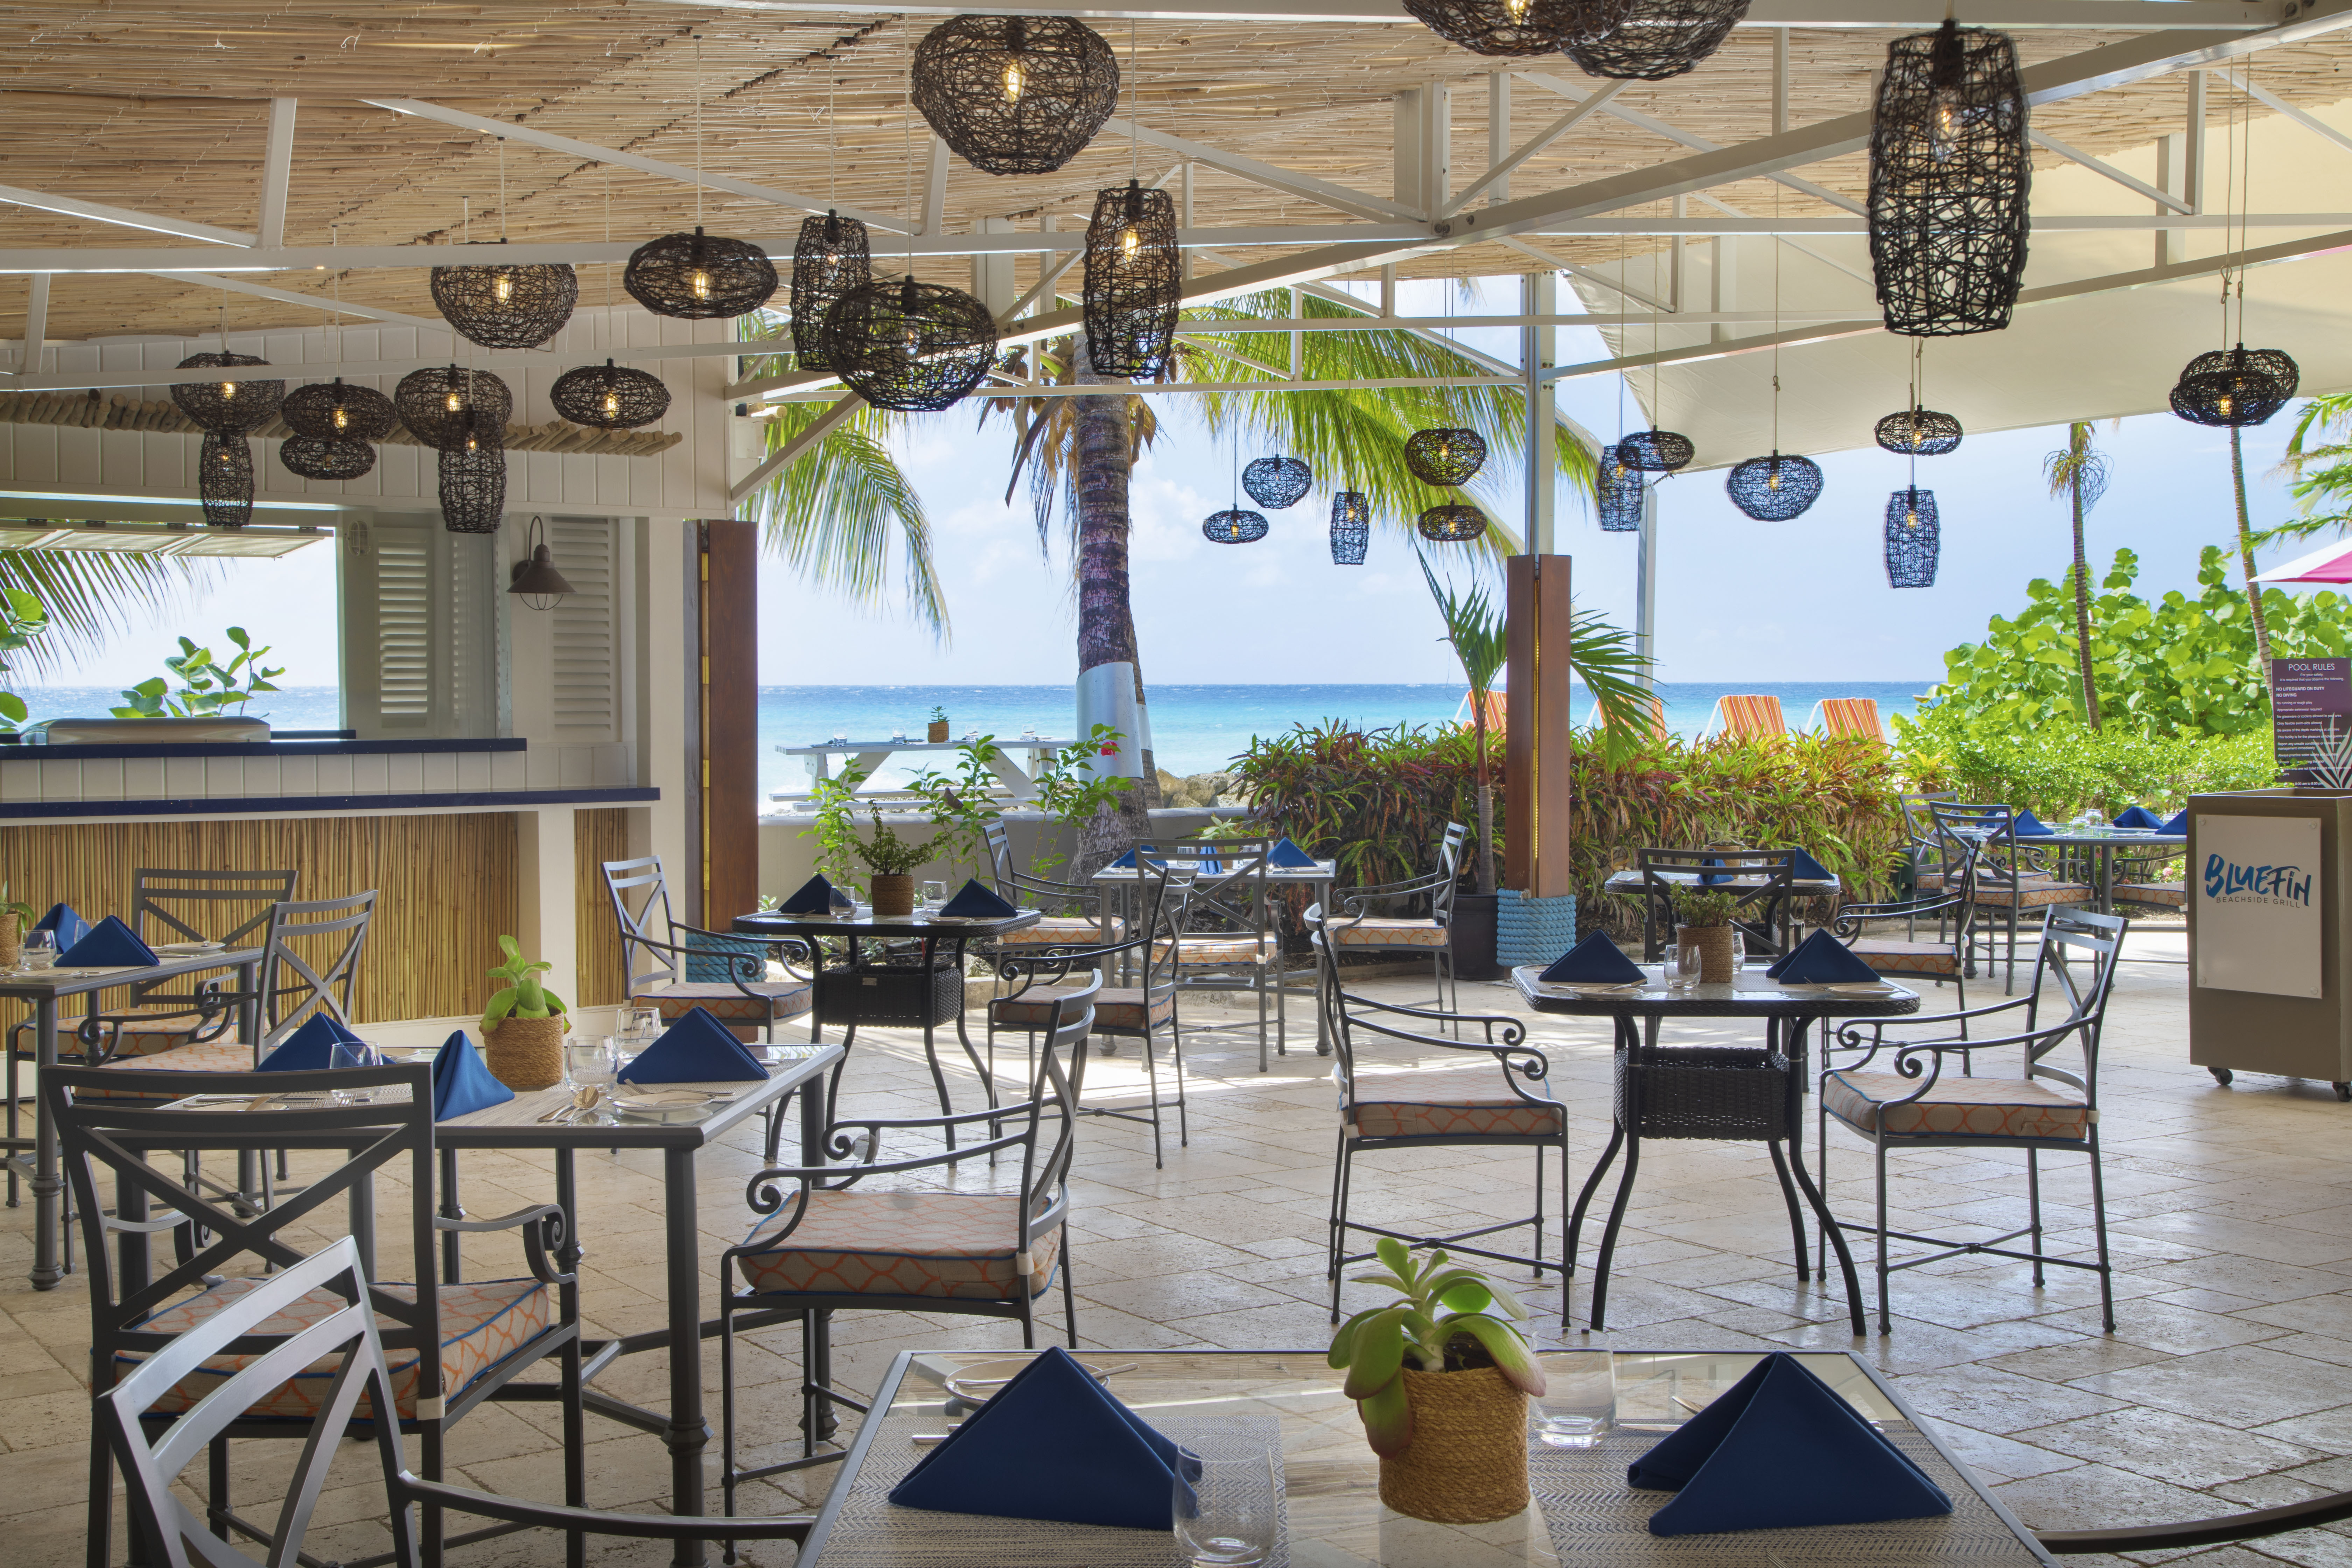 O2 Beach Club & Spa firmy Ocean Hotels